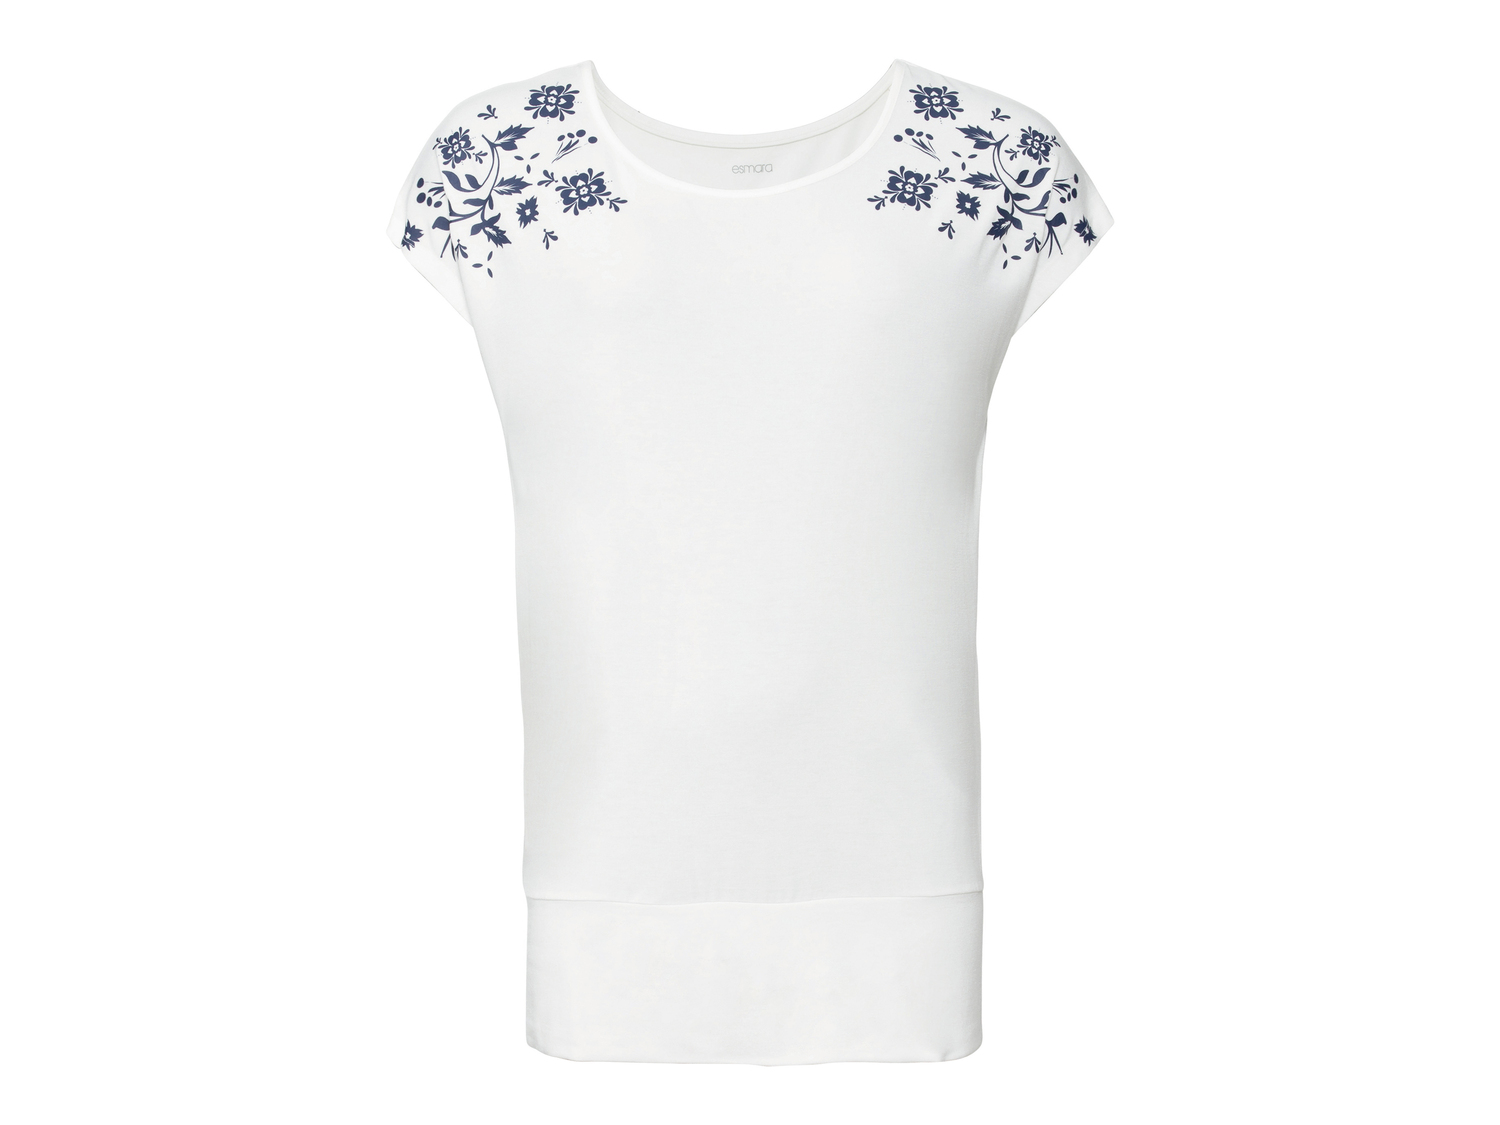 T-shirt lunga da donna Esmara, prezzo 4.99 &#8364; 
Misure: S-L
Taglie disponibili

Caratteristiche

- ...